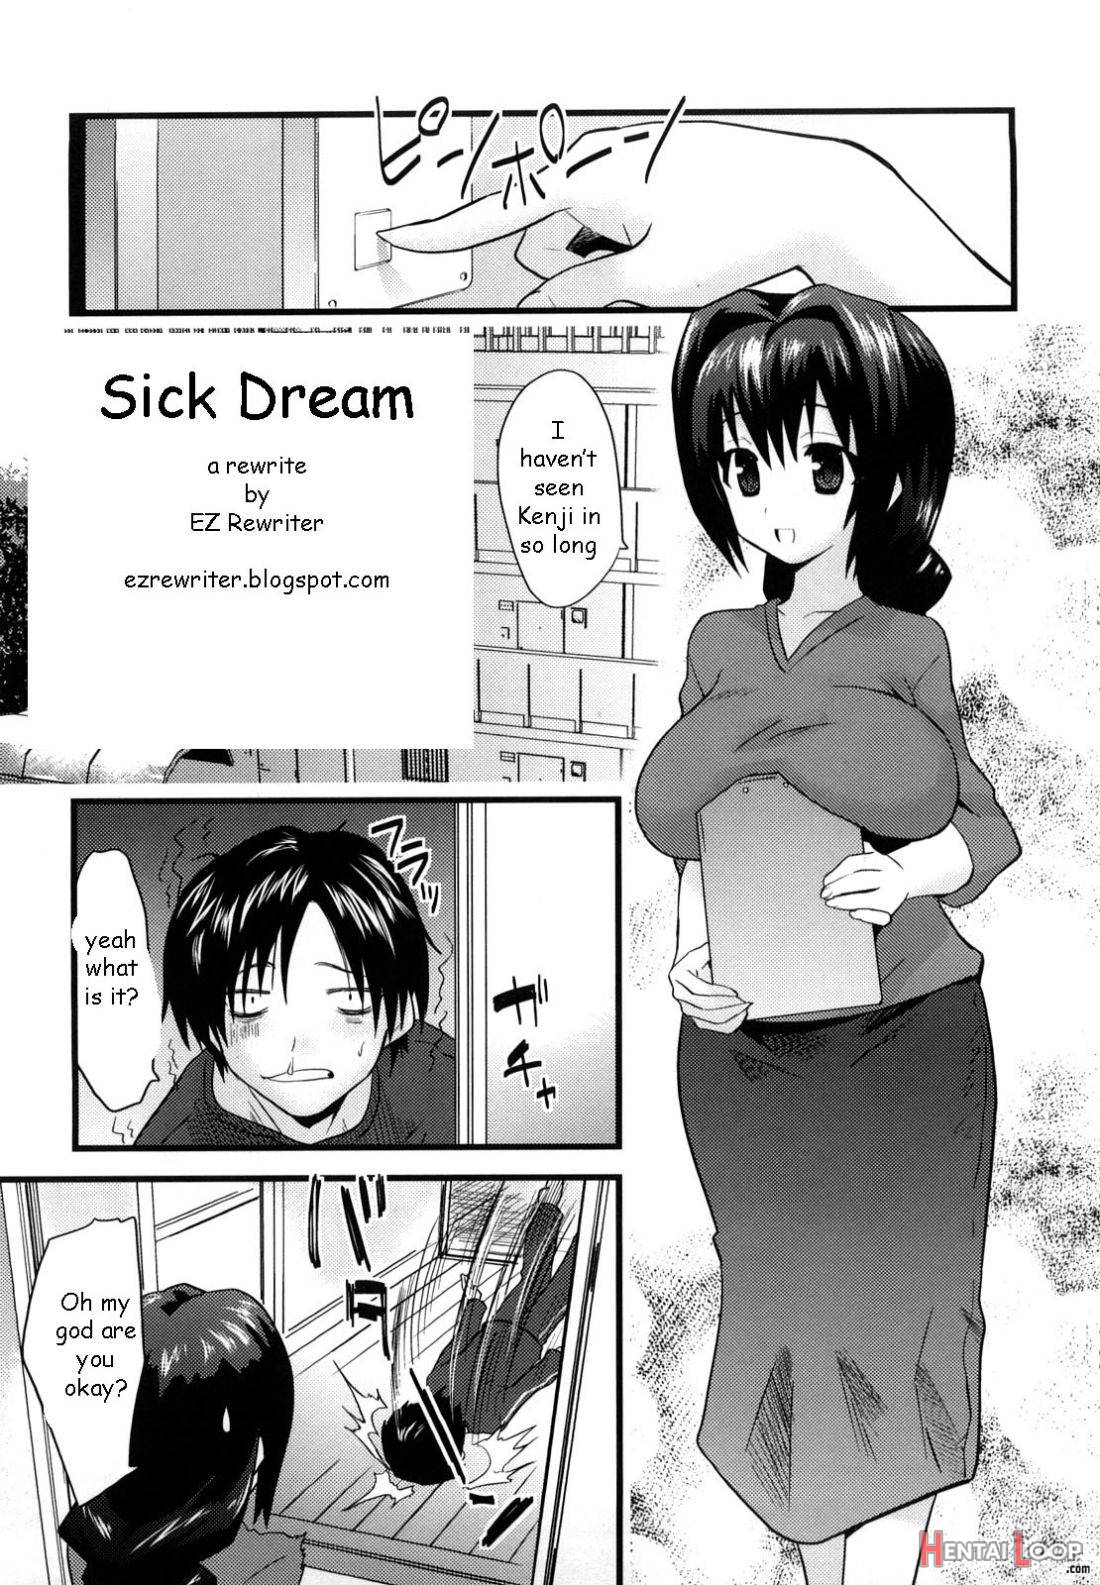 Sick Dream page 1